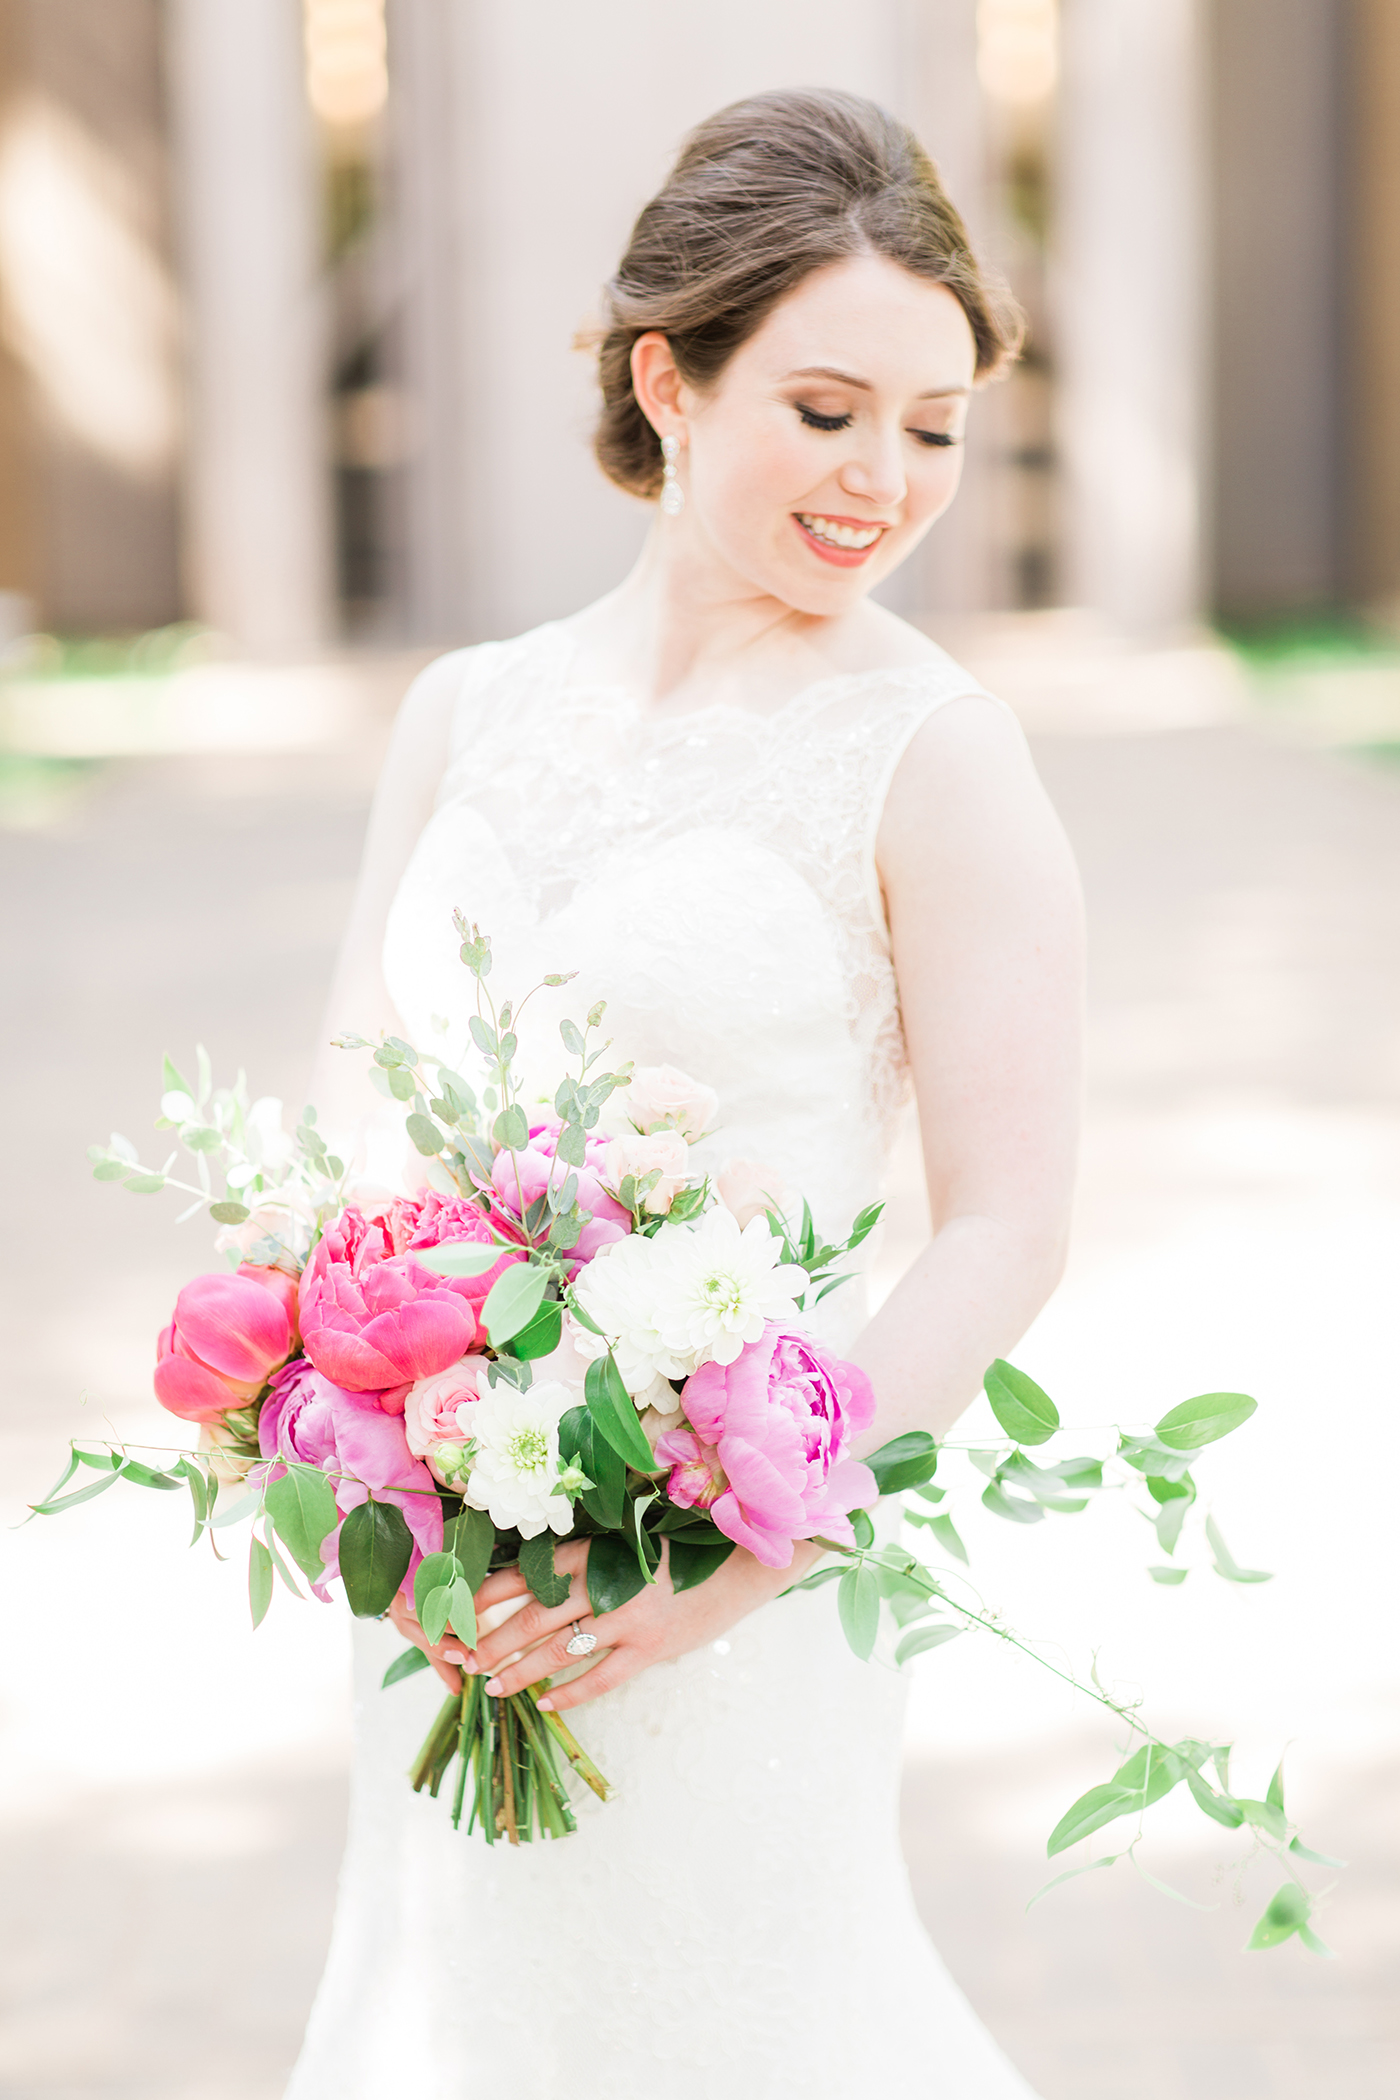 DFW Wedding Floral Design - A Stylish Soiree